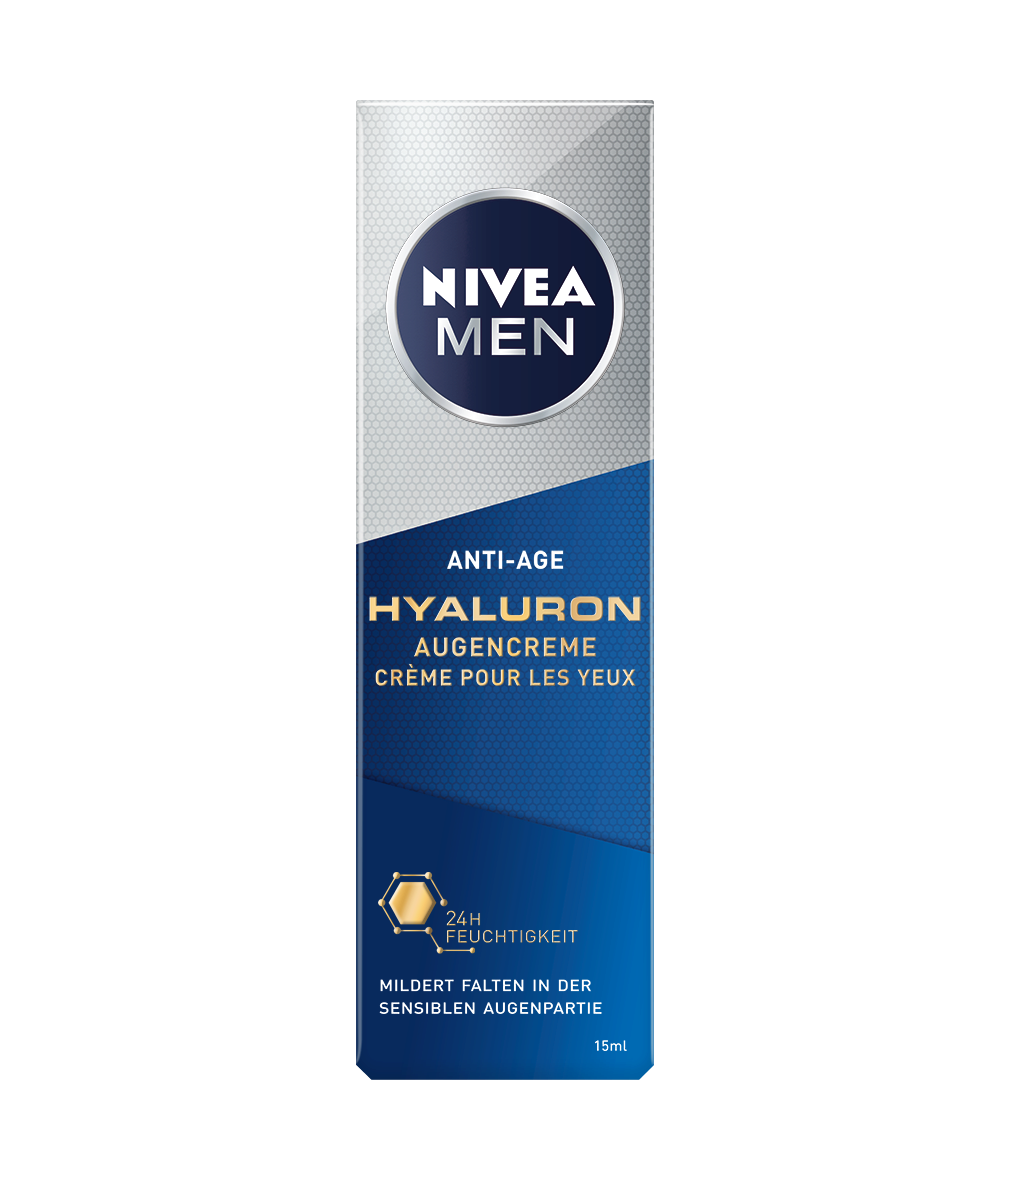 NIVEA MEN Anti-Age Hyaluron Augencreme_15ml